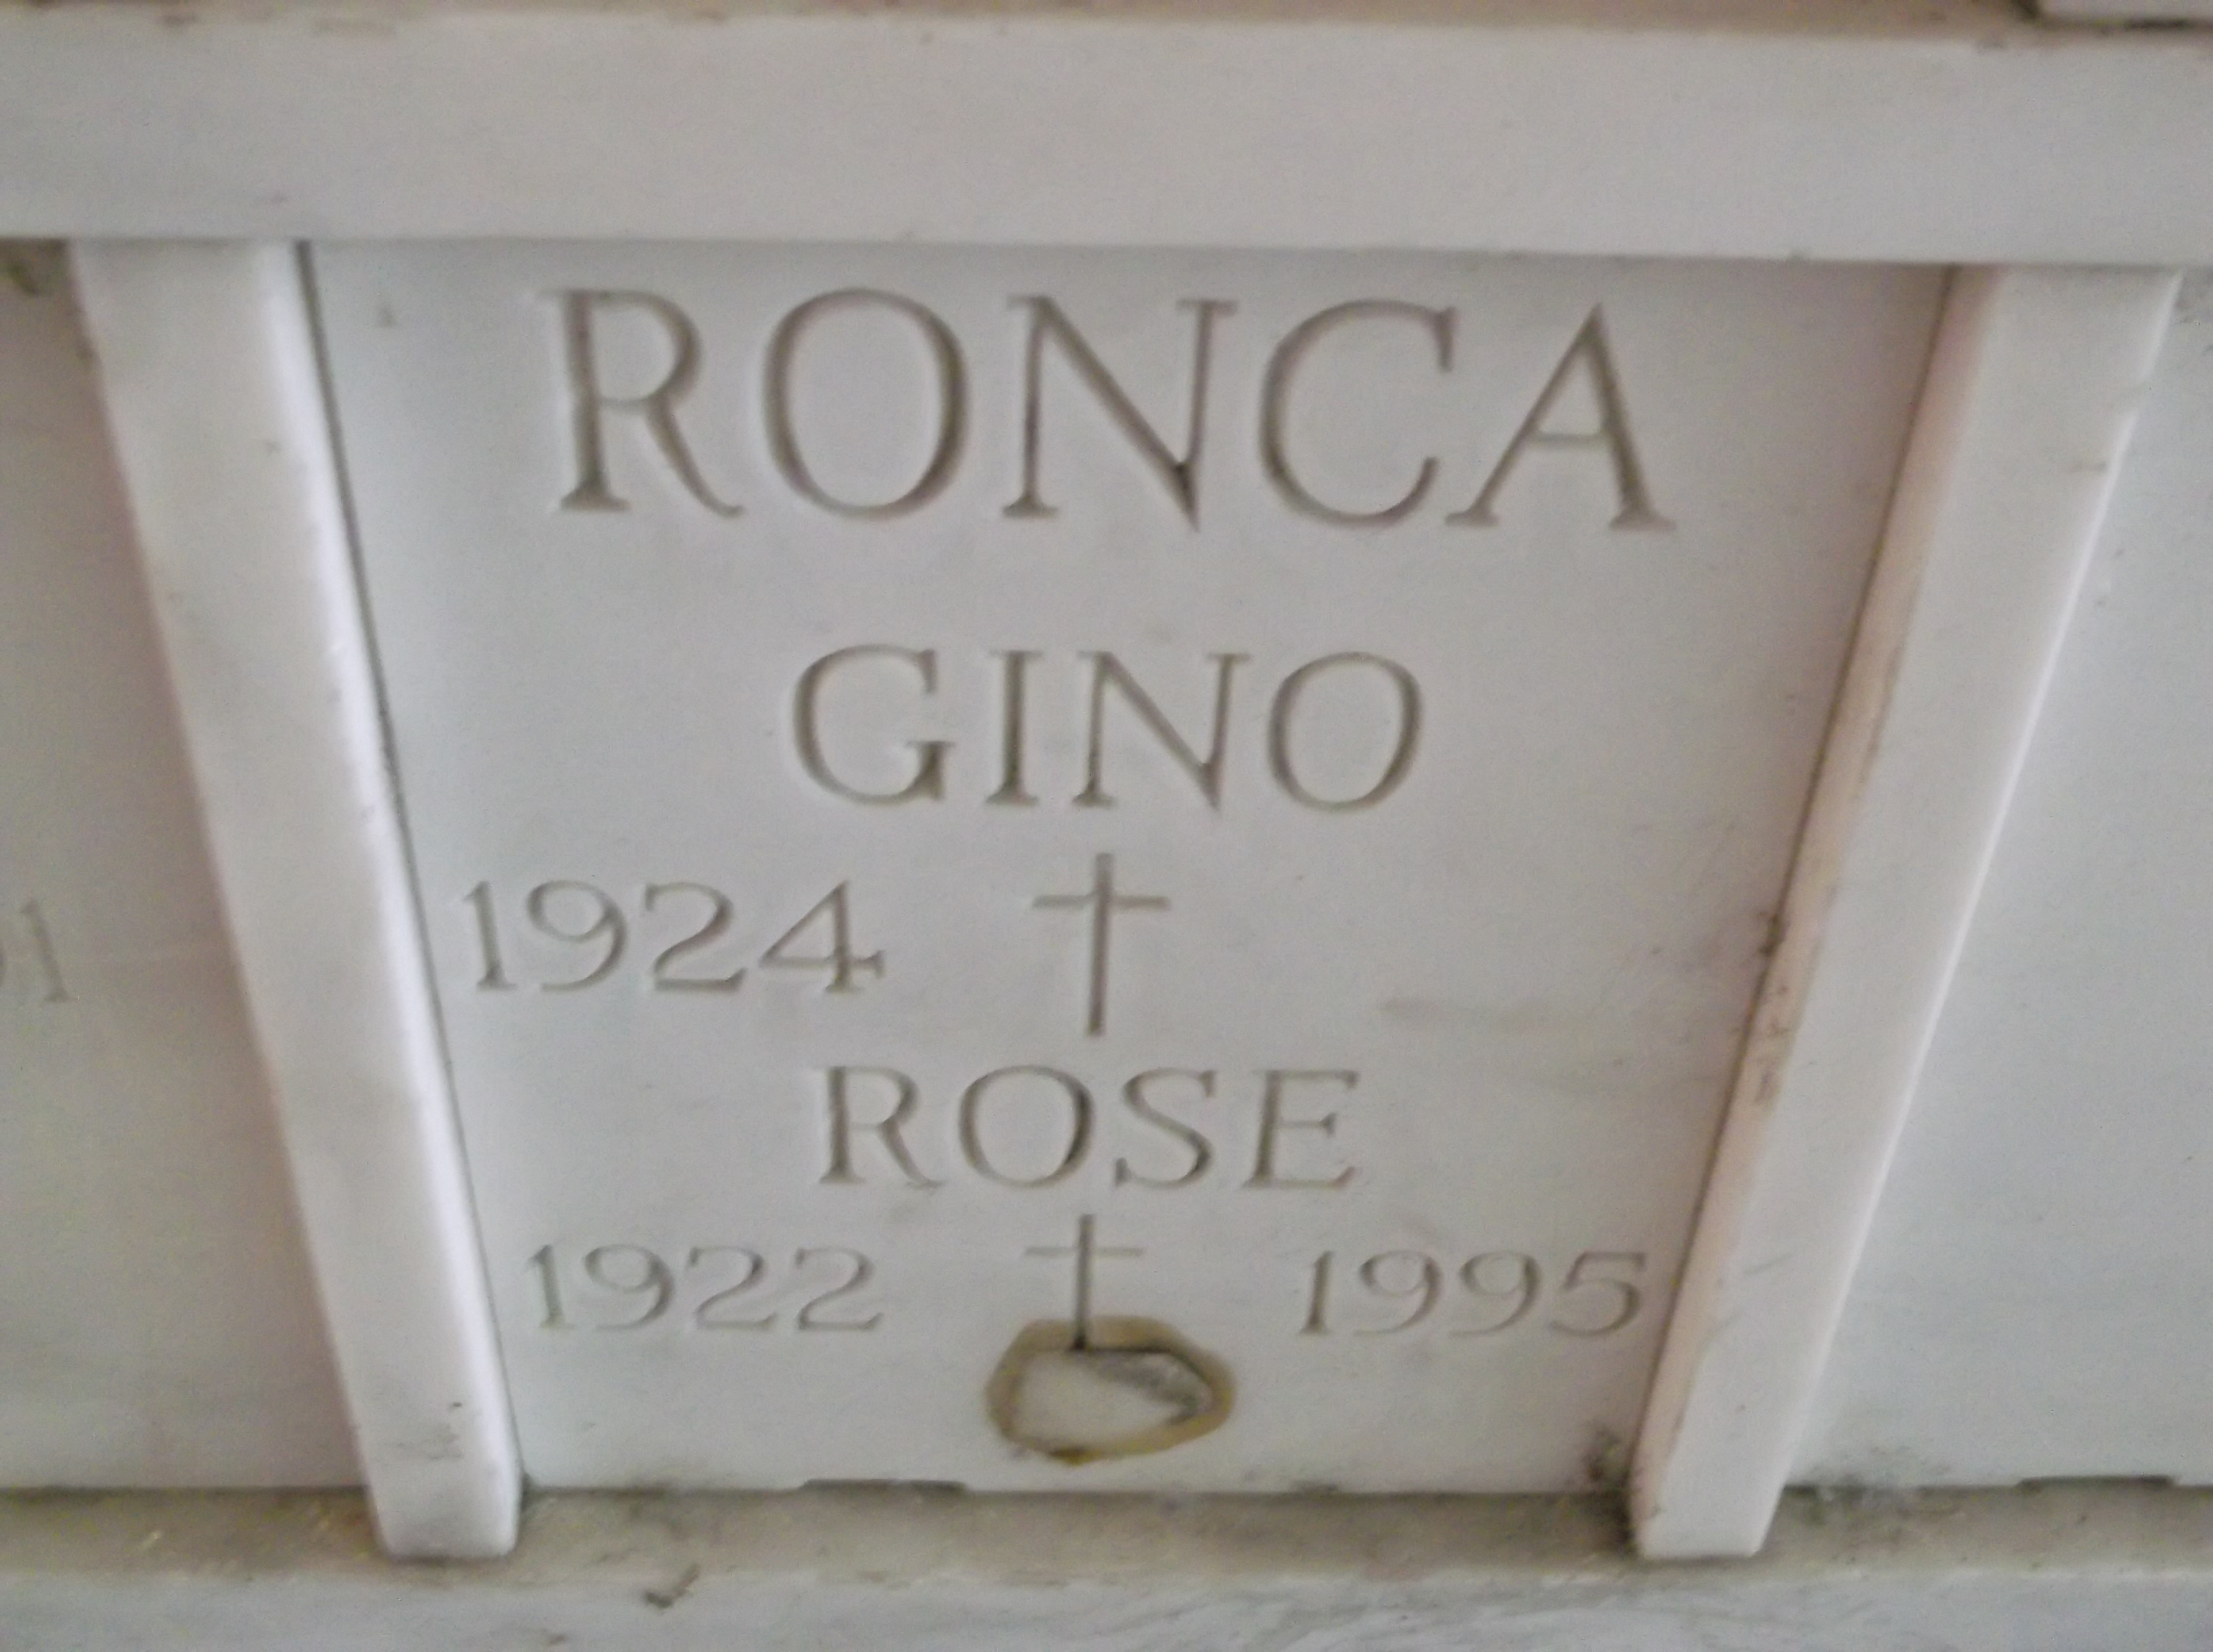 Rose Ronca